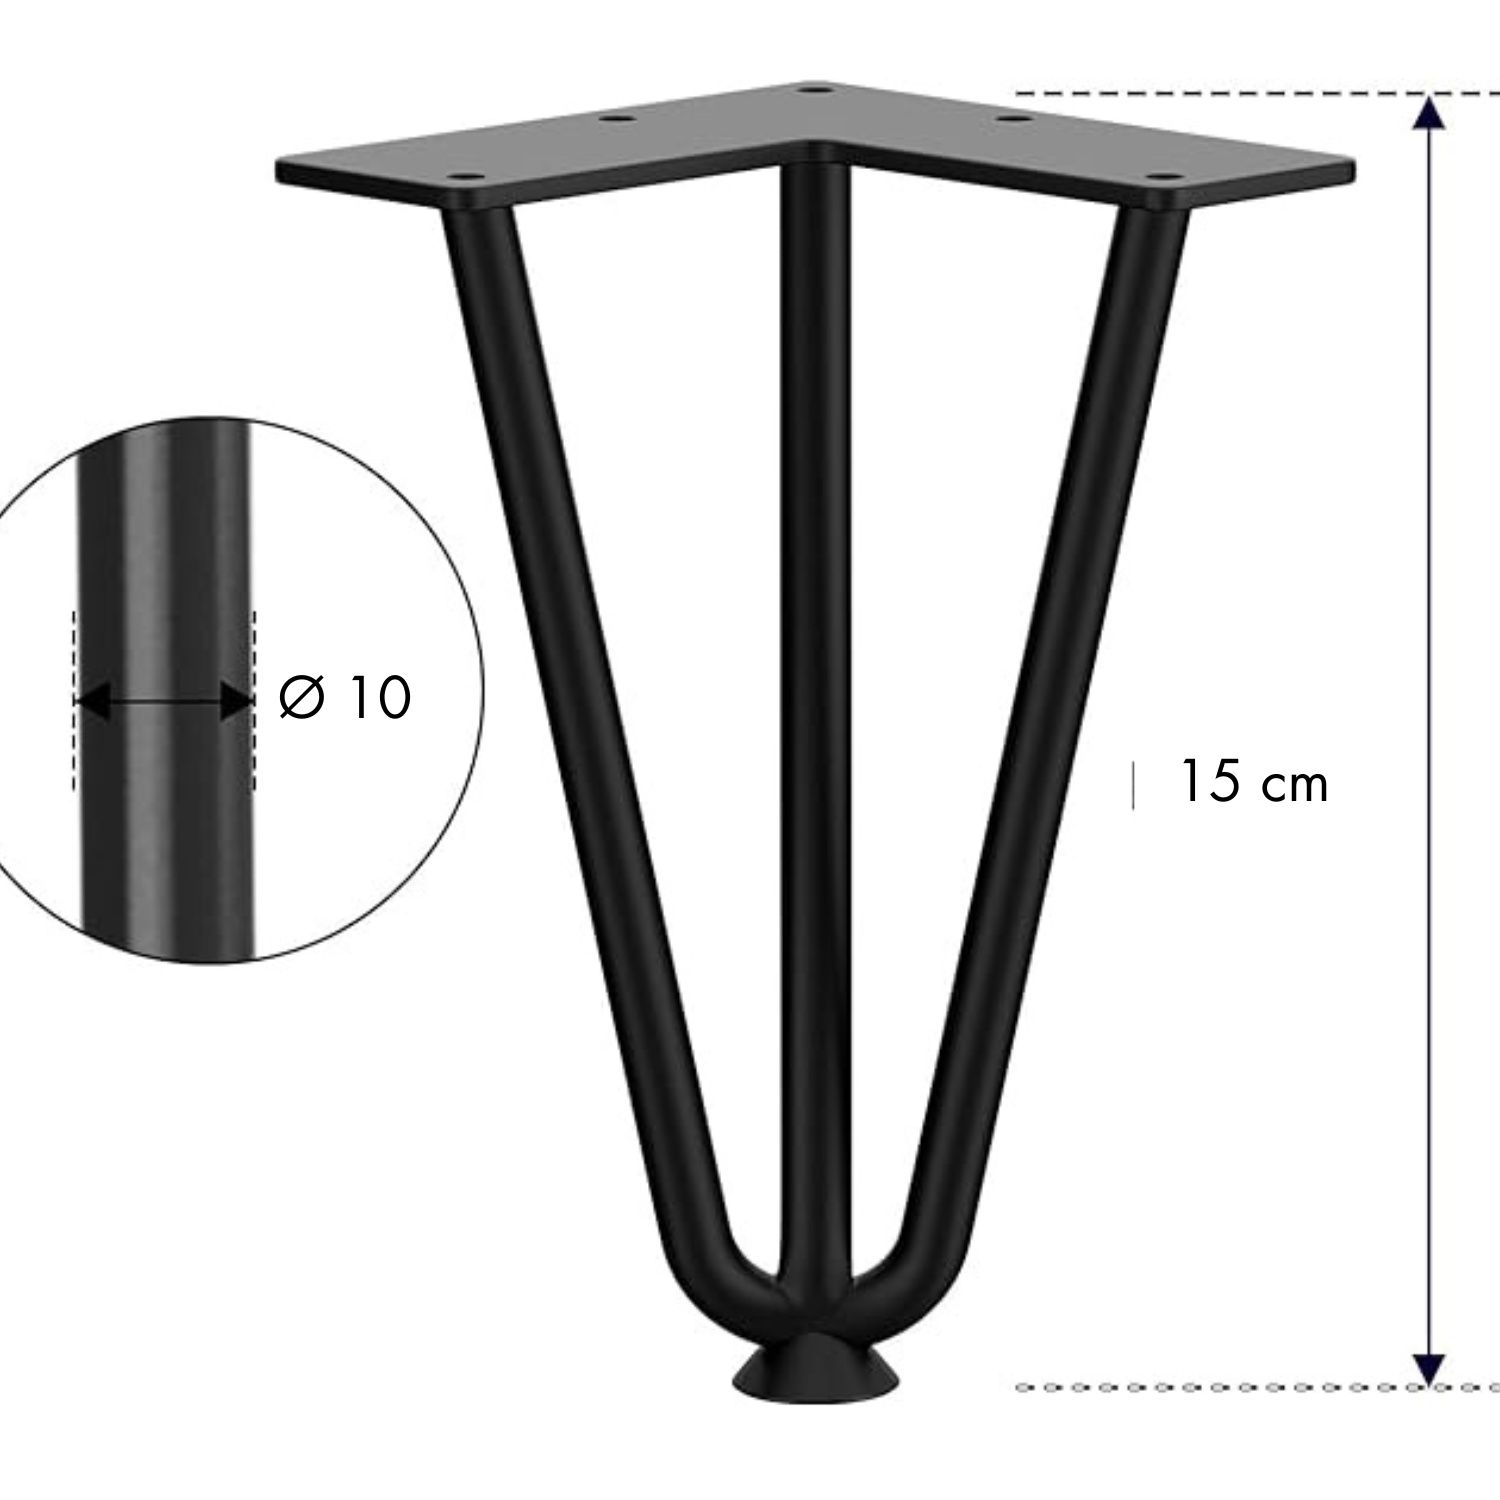 Picioare metalice hairpin pentru mese/comode/scaune  15-100 cm